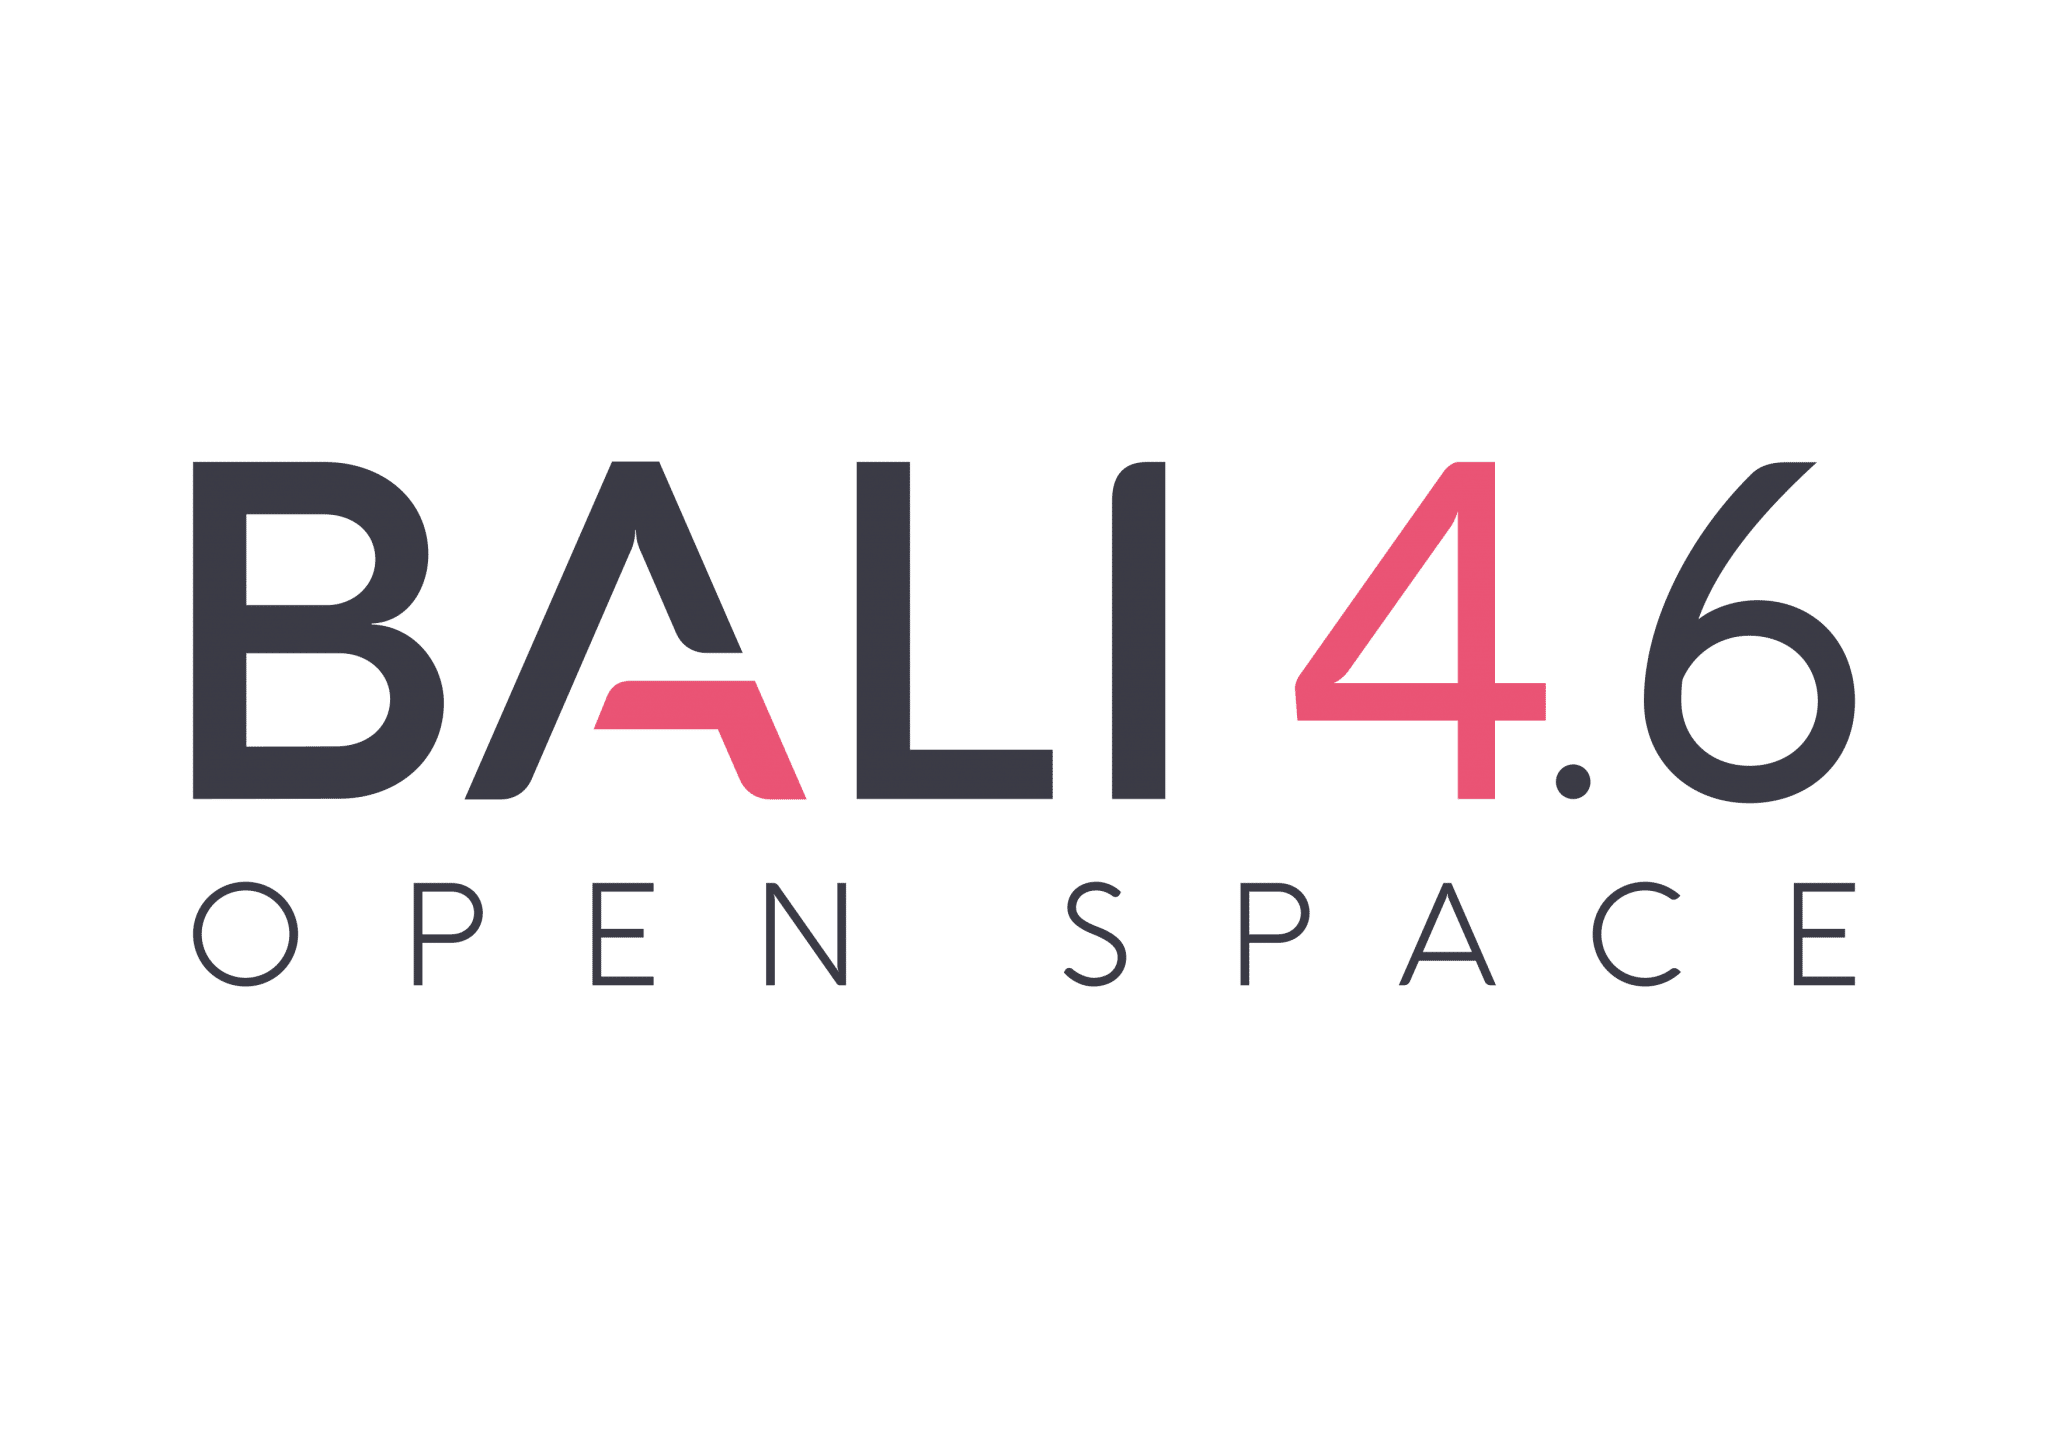 BALI 4.6